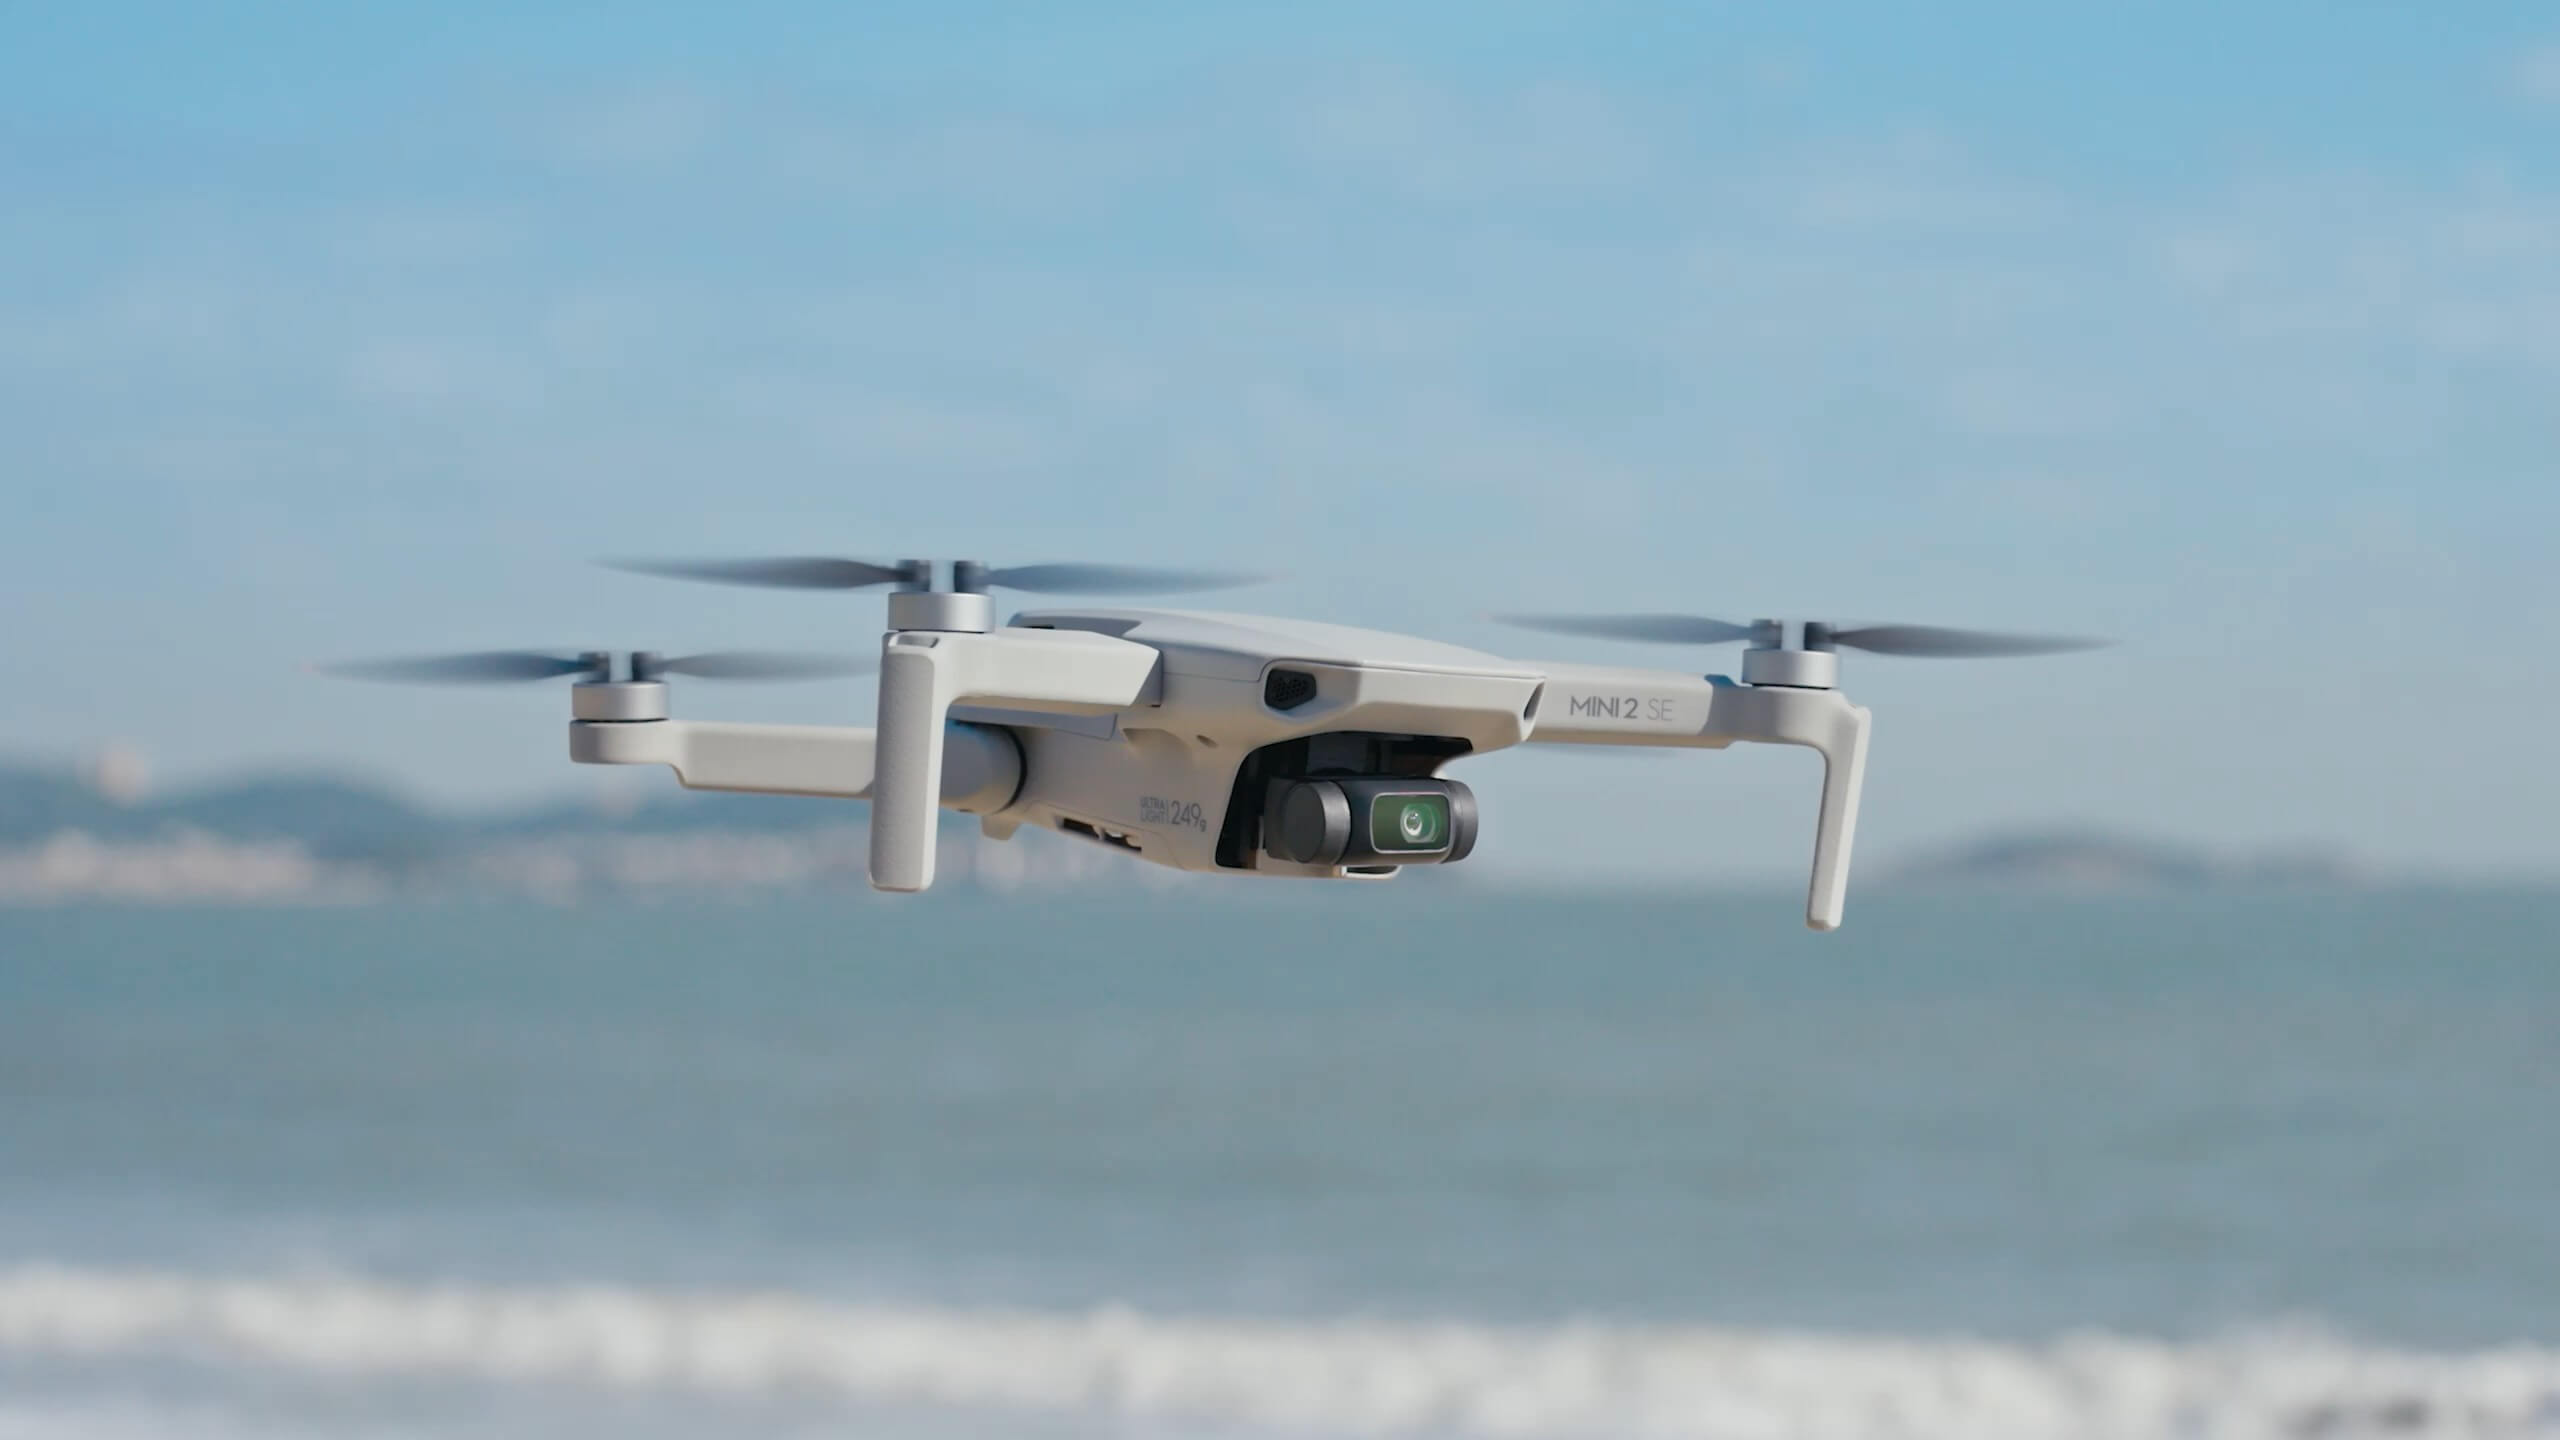 Melhor drone para iniciantes DJI Mini 2 SE voando na praia